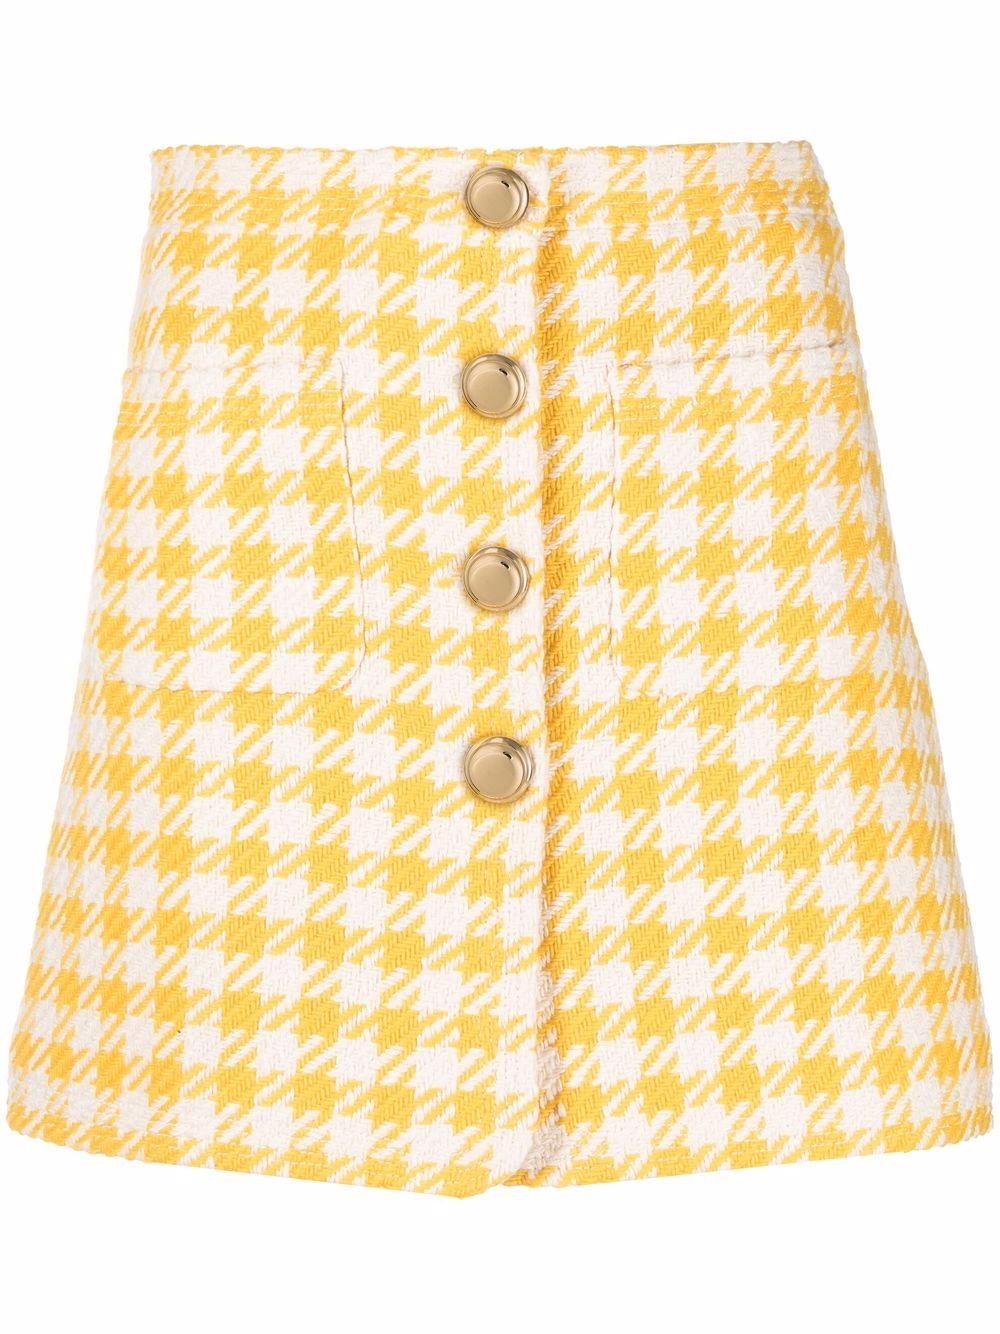 Miu Miu houndstooth pattern mini skirt - Yellow von Miu Miu